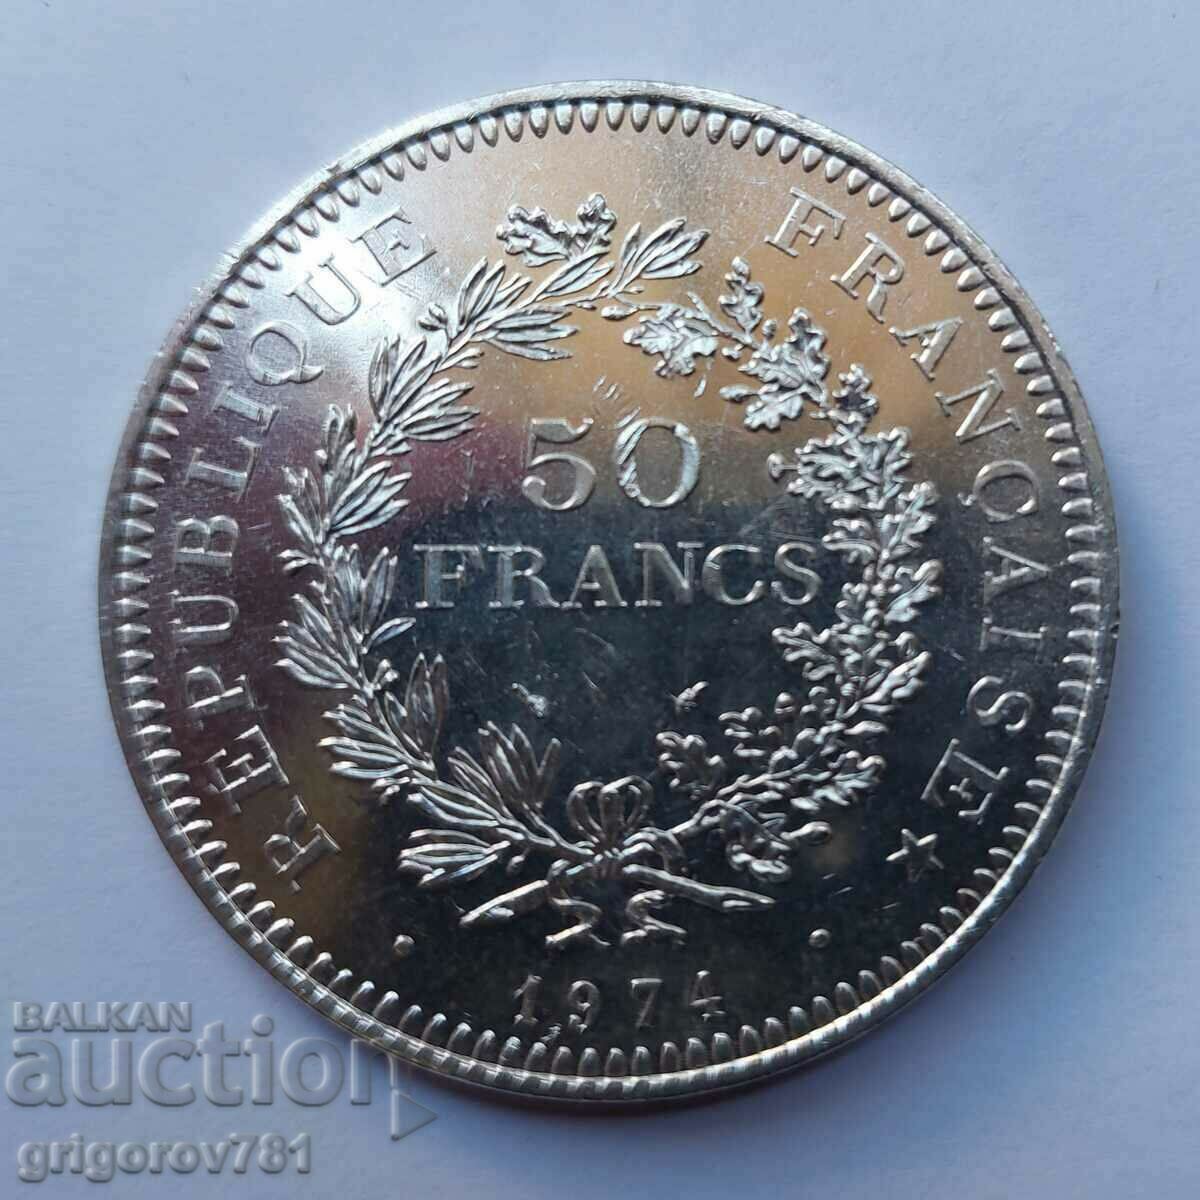 Ασήμι 50 φράγκων Γαλλία 1974 - Ασημένιο νόμισμα #14